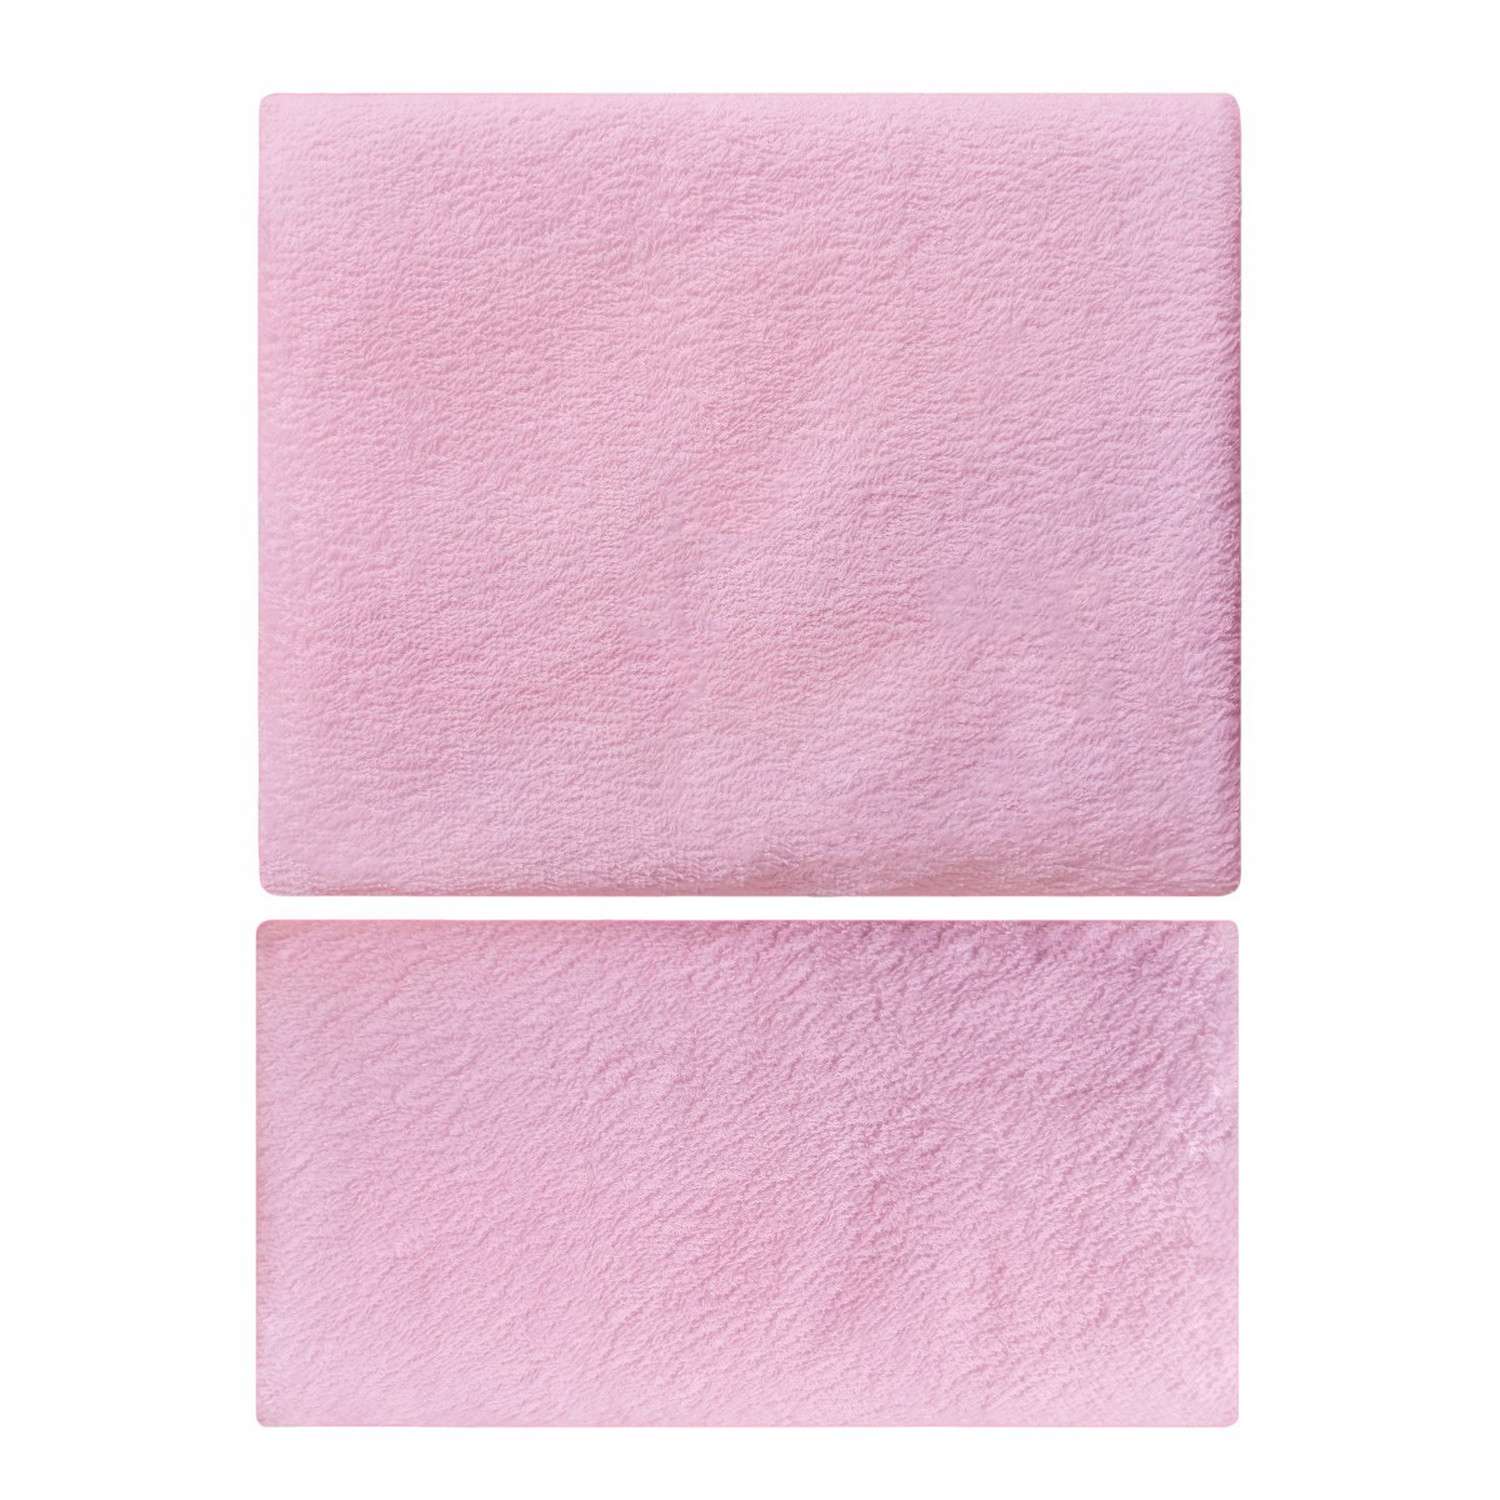 Наматрасник Пелигрин для детской кровати непромокаемый махровый круглый и овальный 2 шт розовый - фото 3